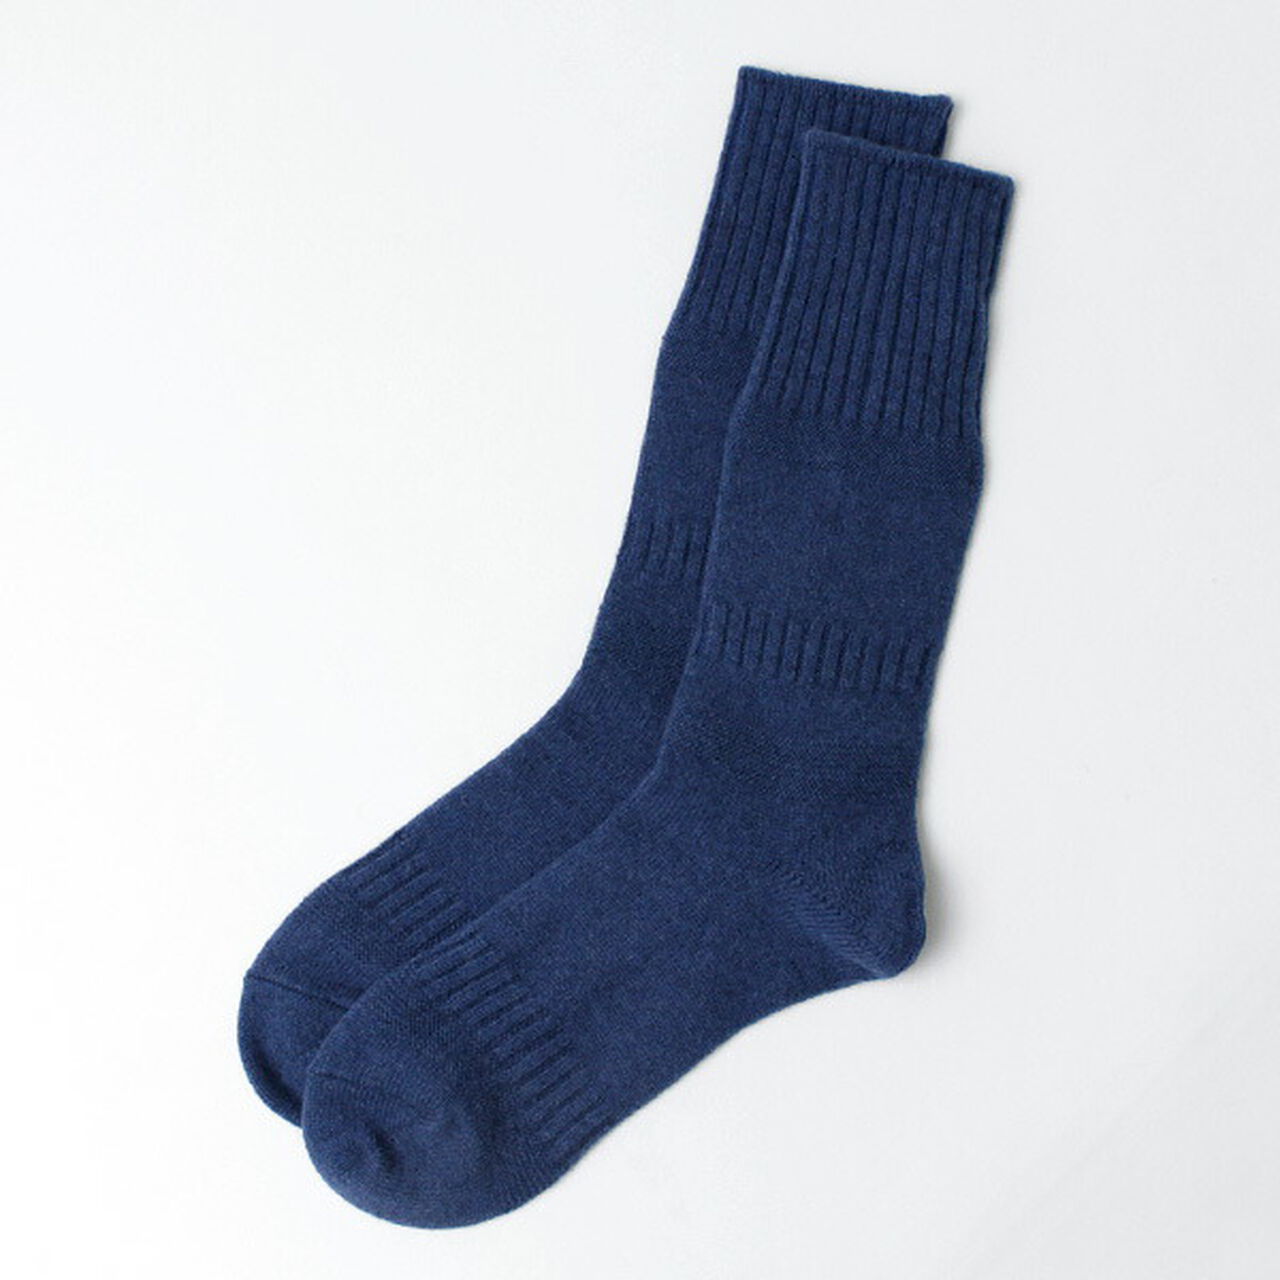 R1378 Gandy pattern crew socks,Blue, large image number 0